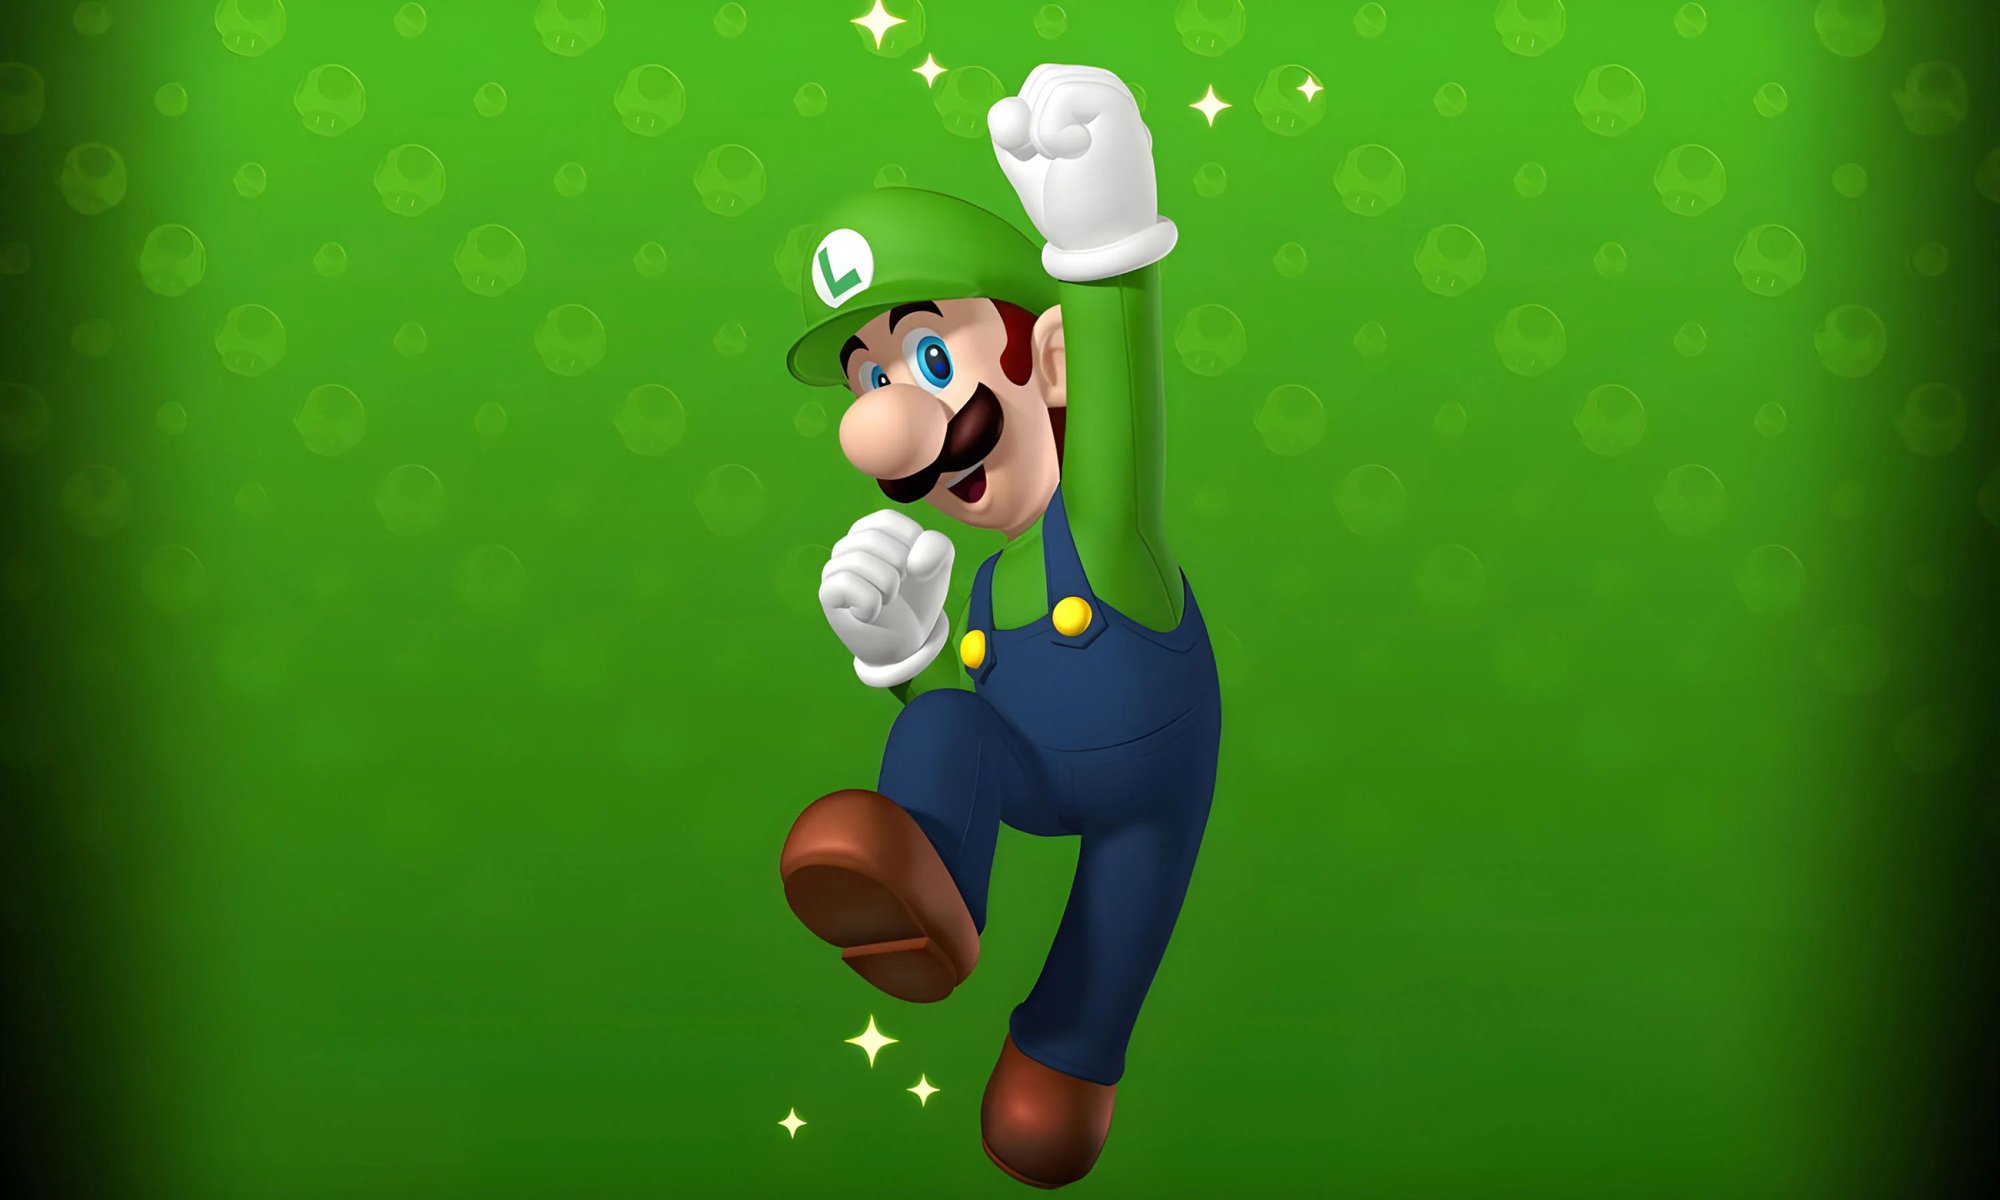 Luigi (Mario games)